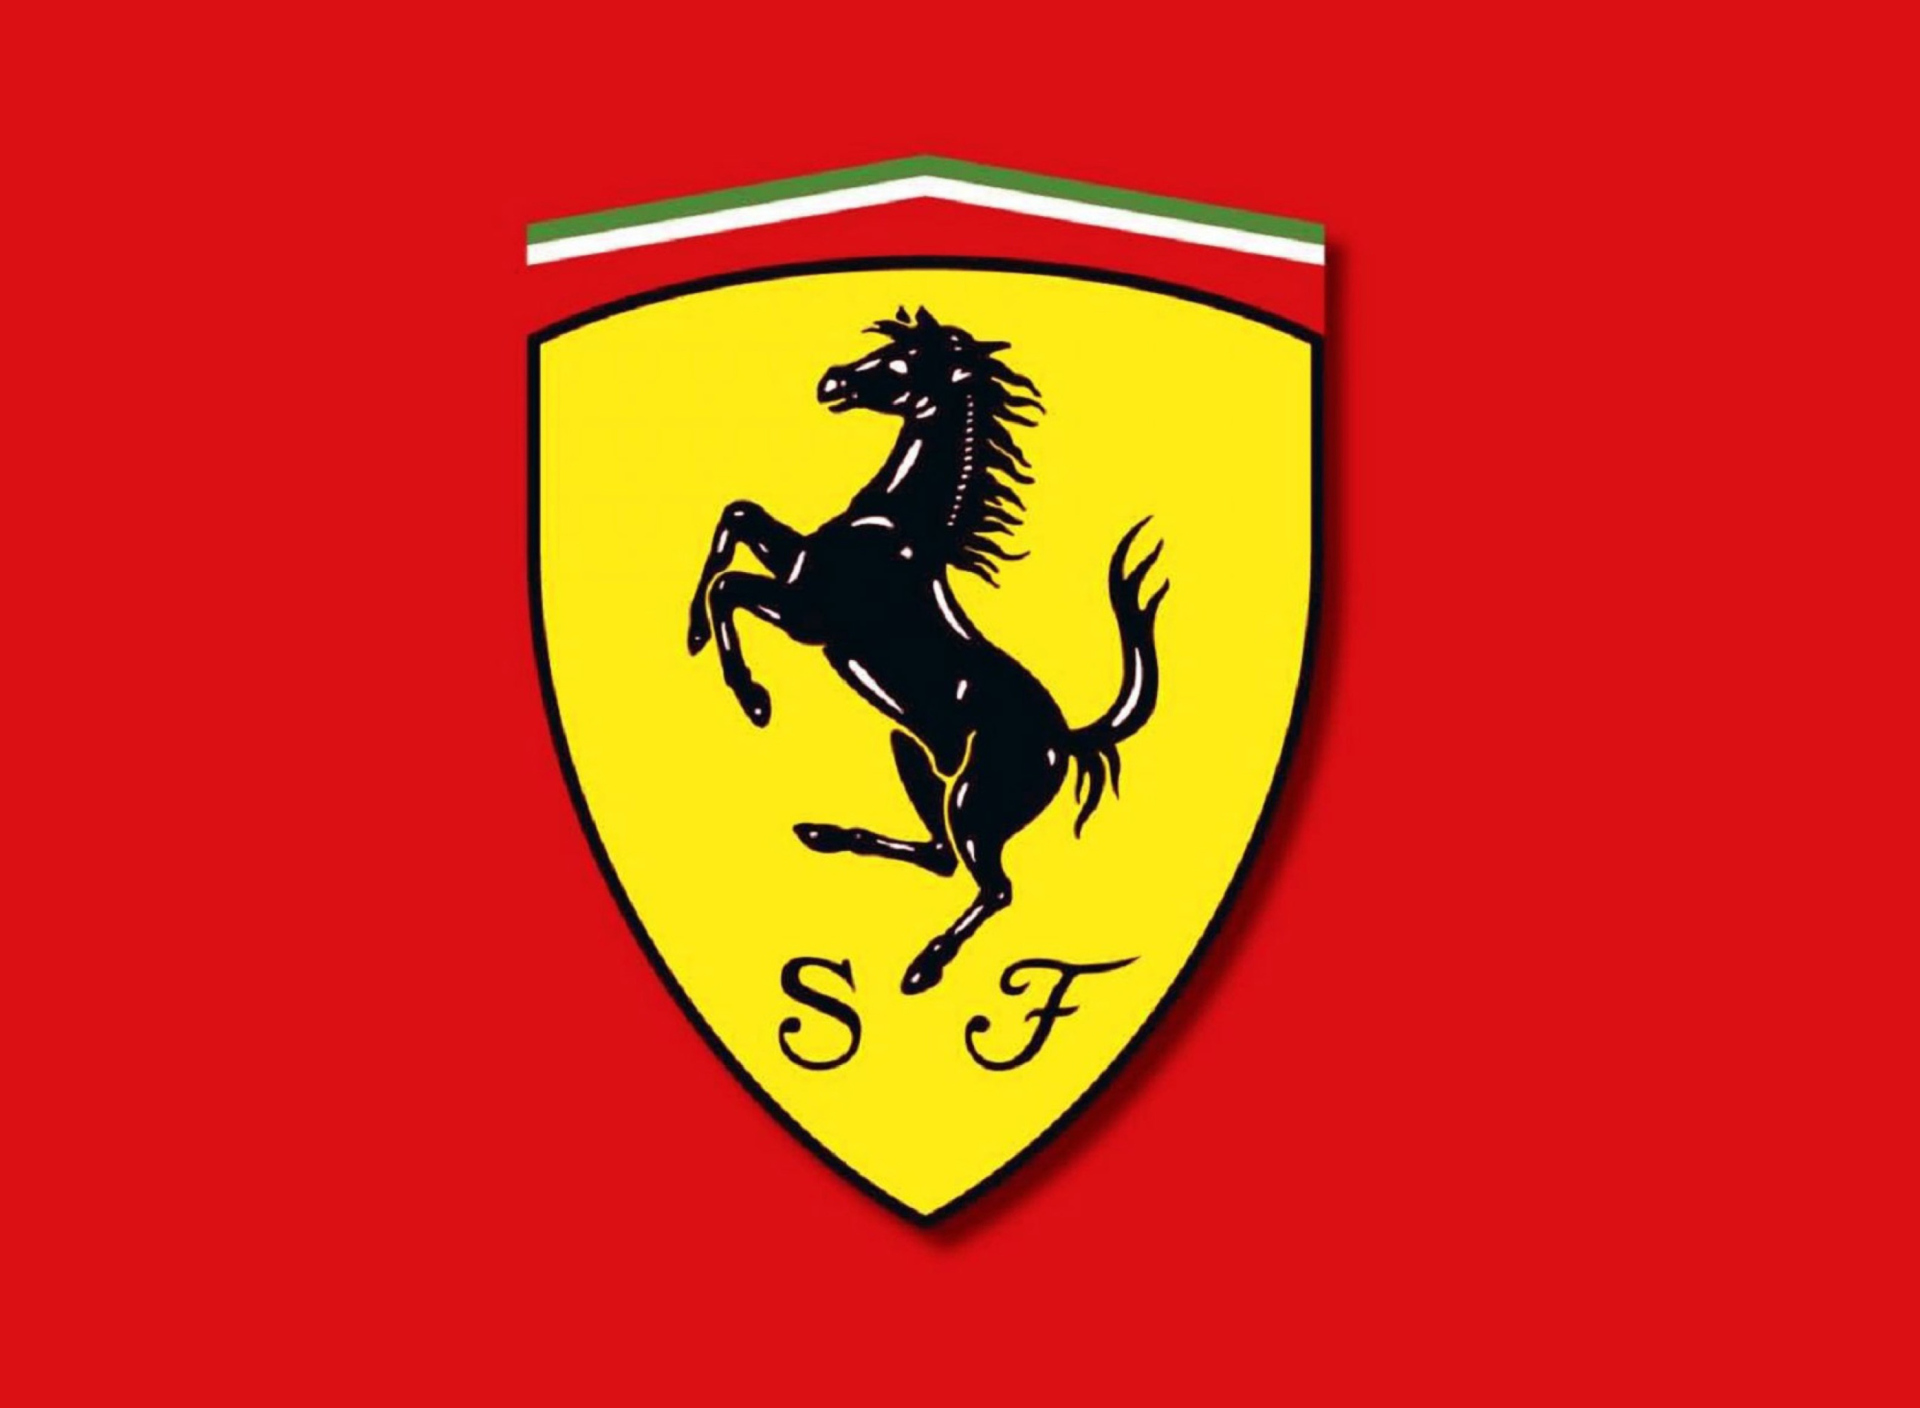 Ferrari Emblem wallpaper 1920x1408